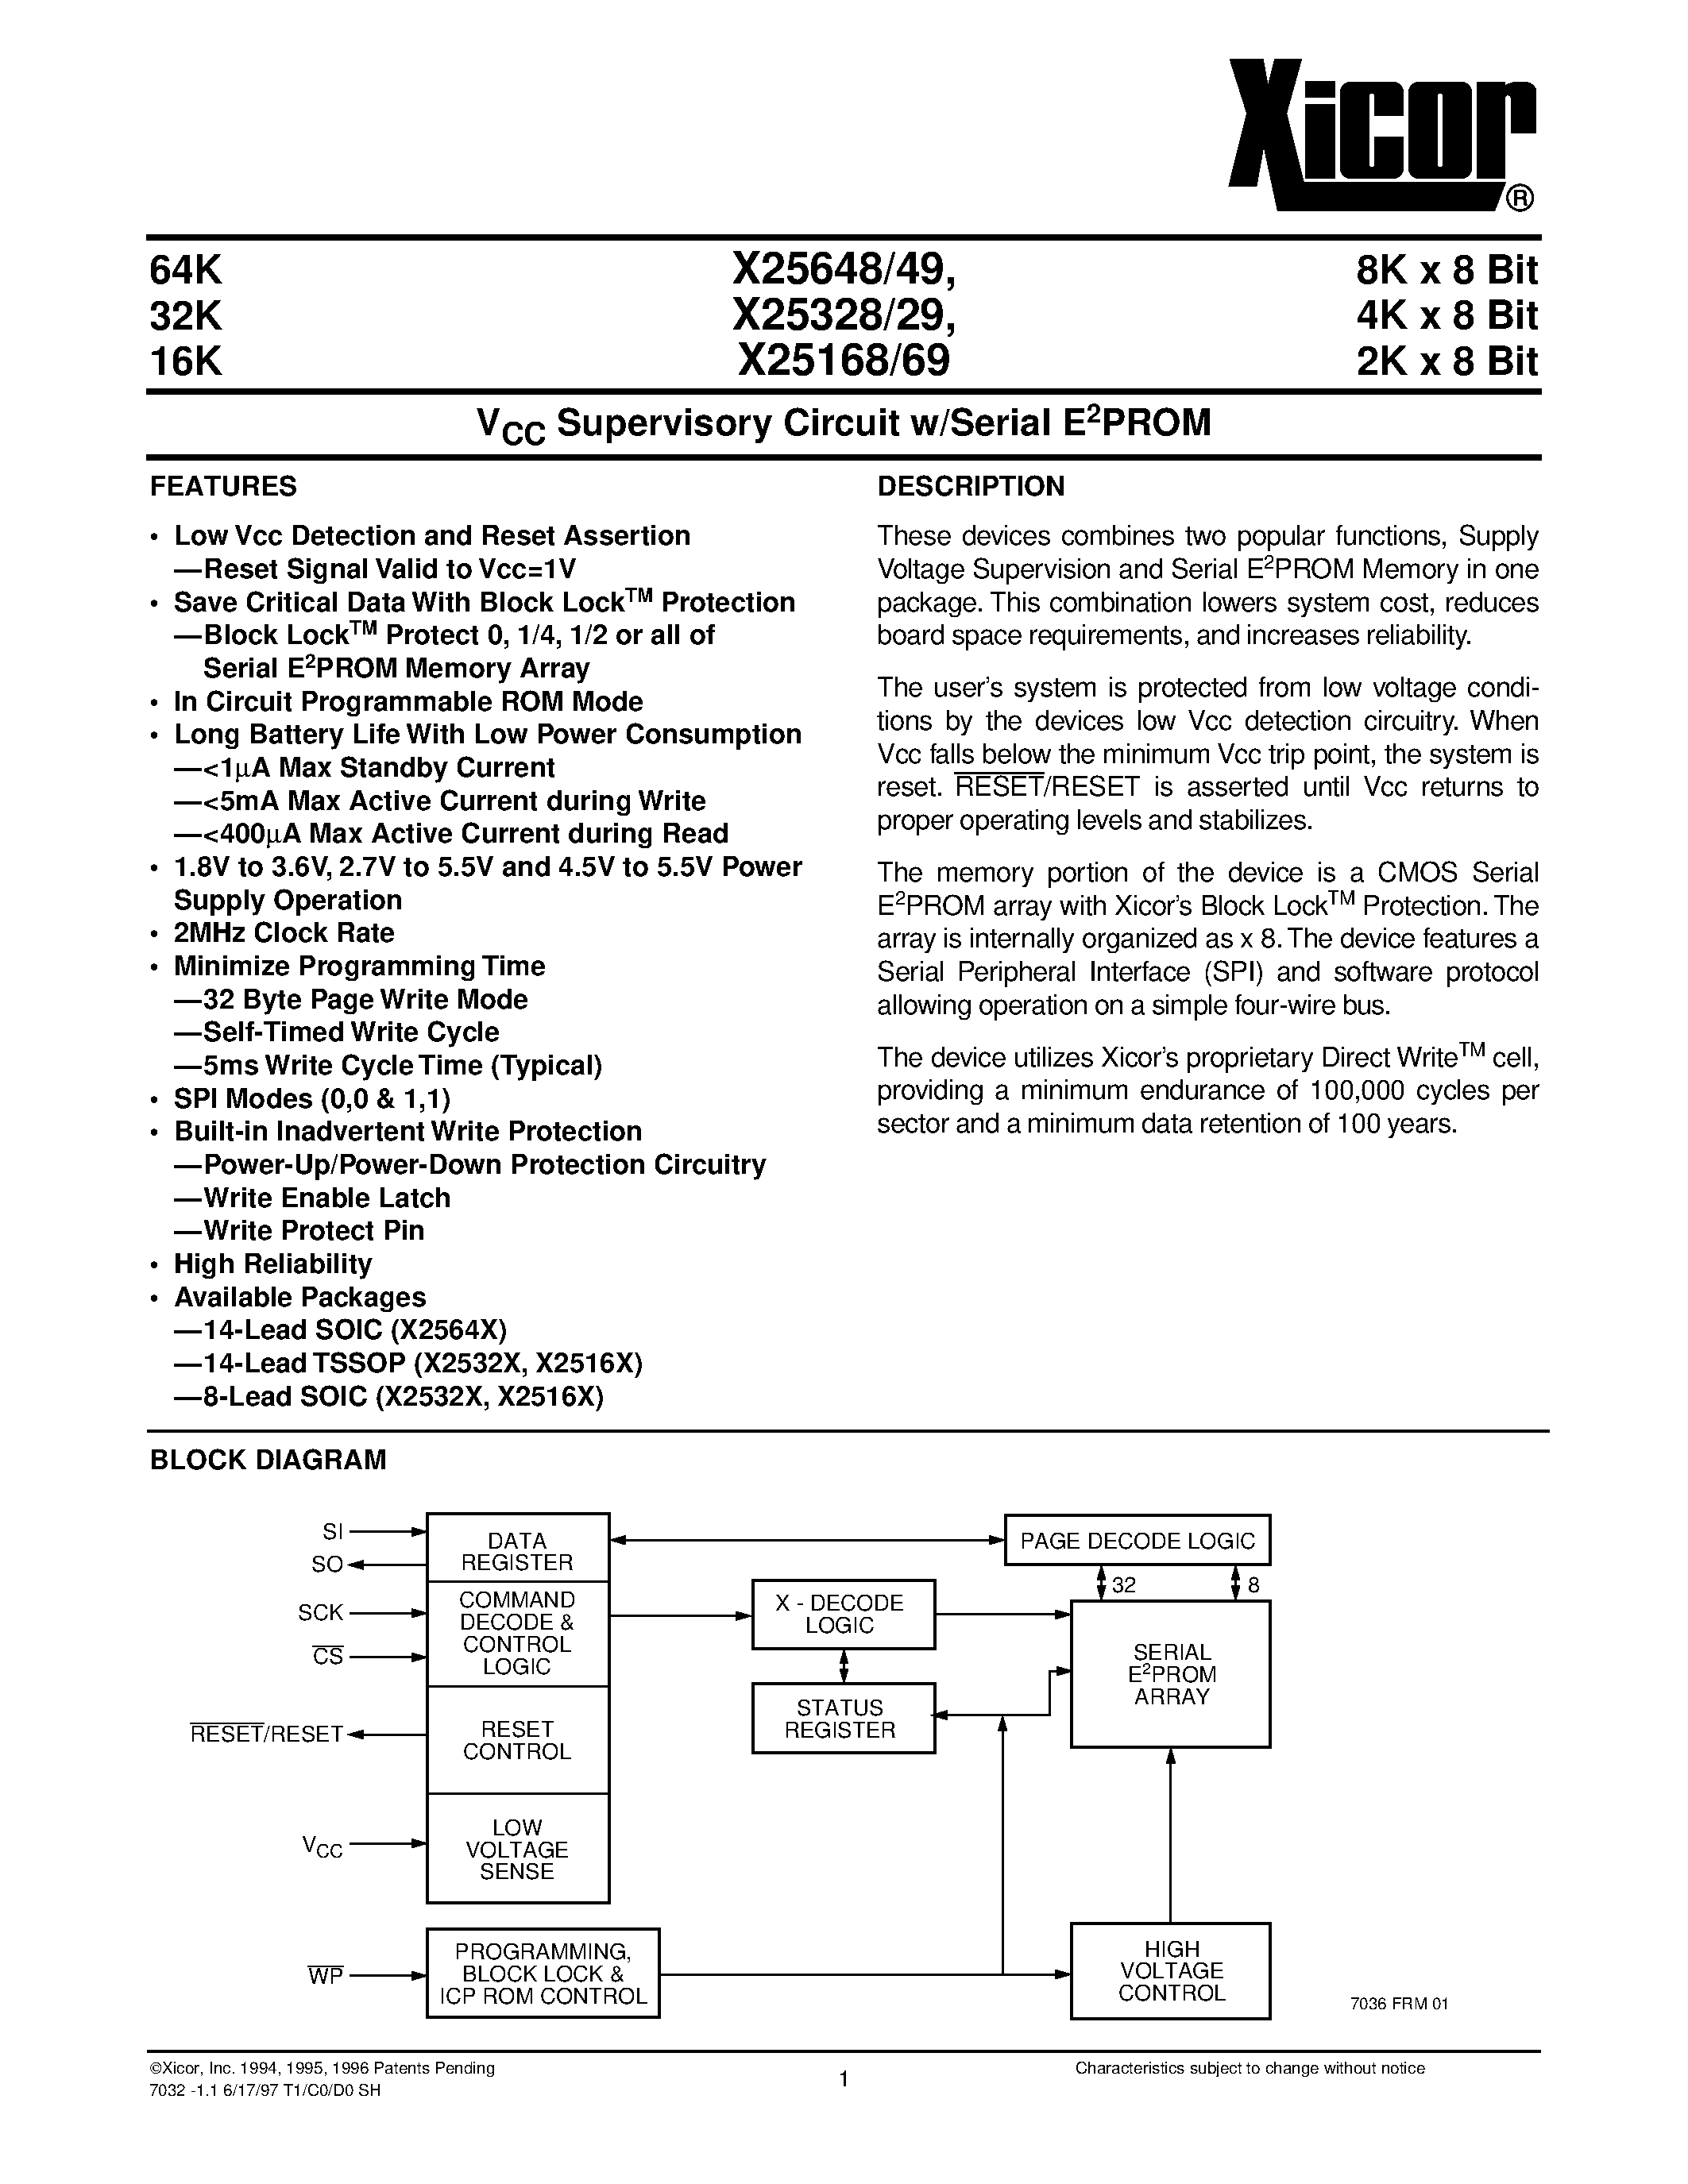 Даташит X25649 - V CC Supervisory Circuit w/Serial E 2 PROM страница 1